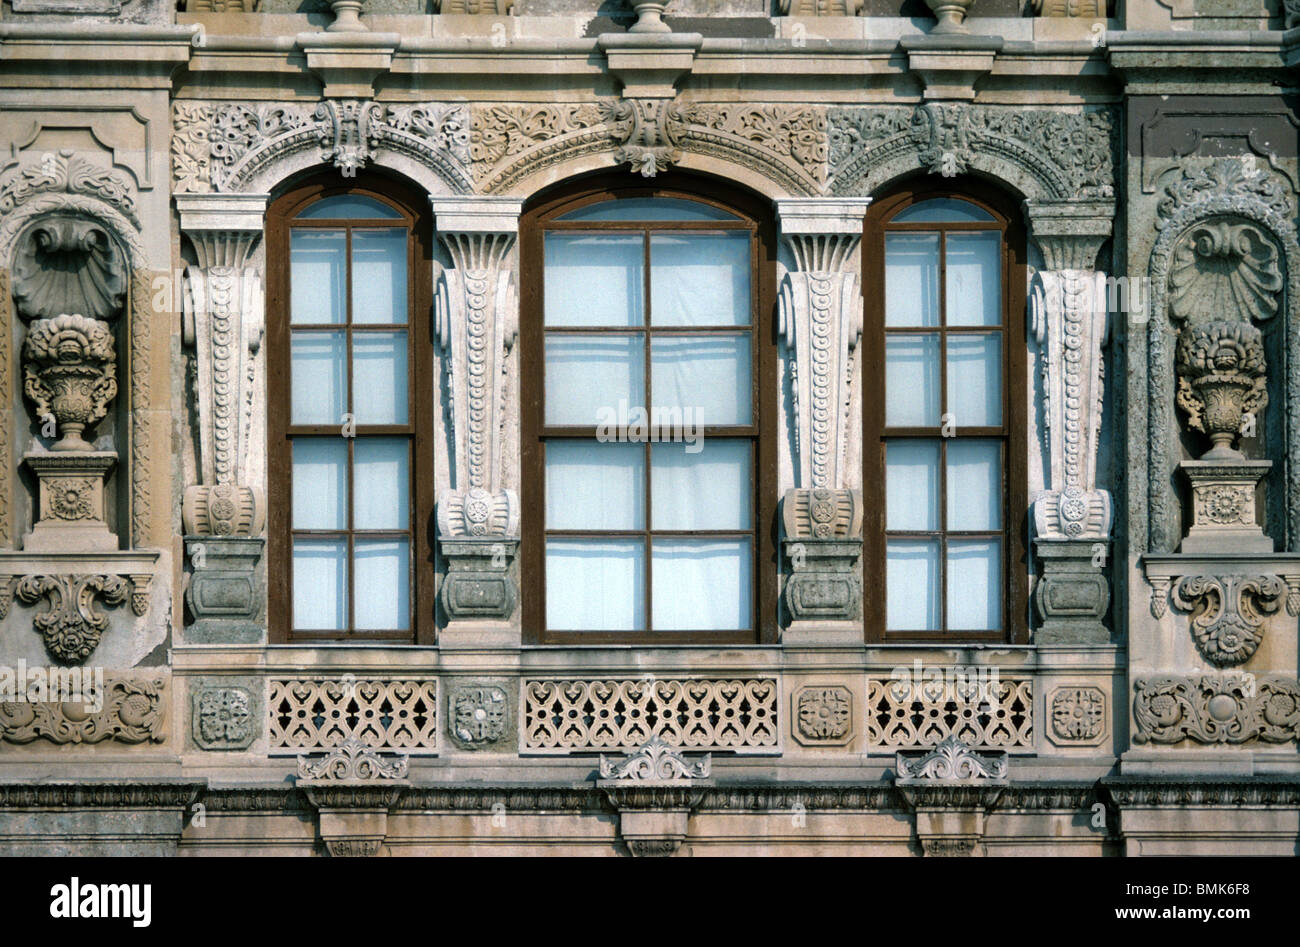 Dreifache barocke Fenster & Fassade des c19th Küçüksu Palastes an der asiatischen Küste des Bosporus oder Bosporus, Istanbul, Türkei Stockfoto